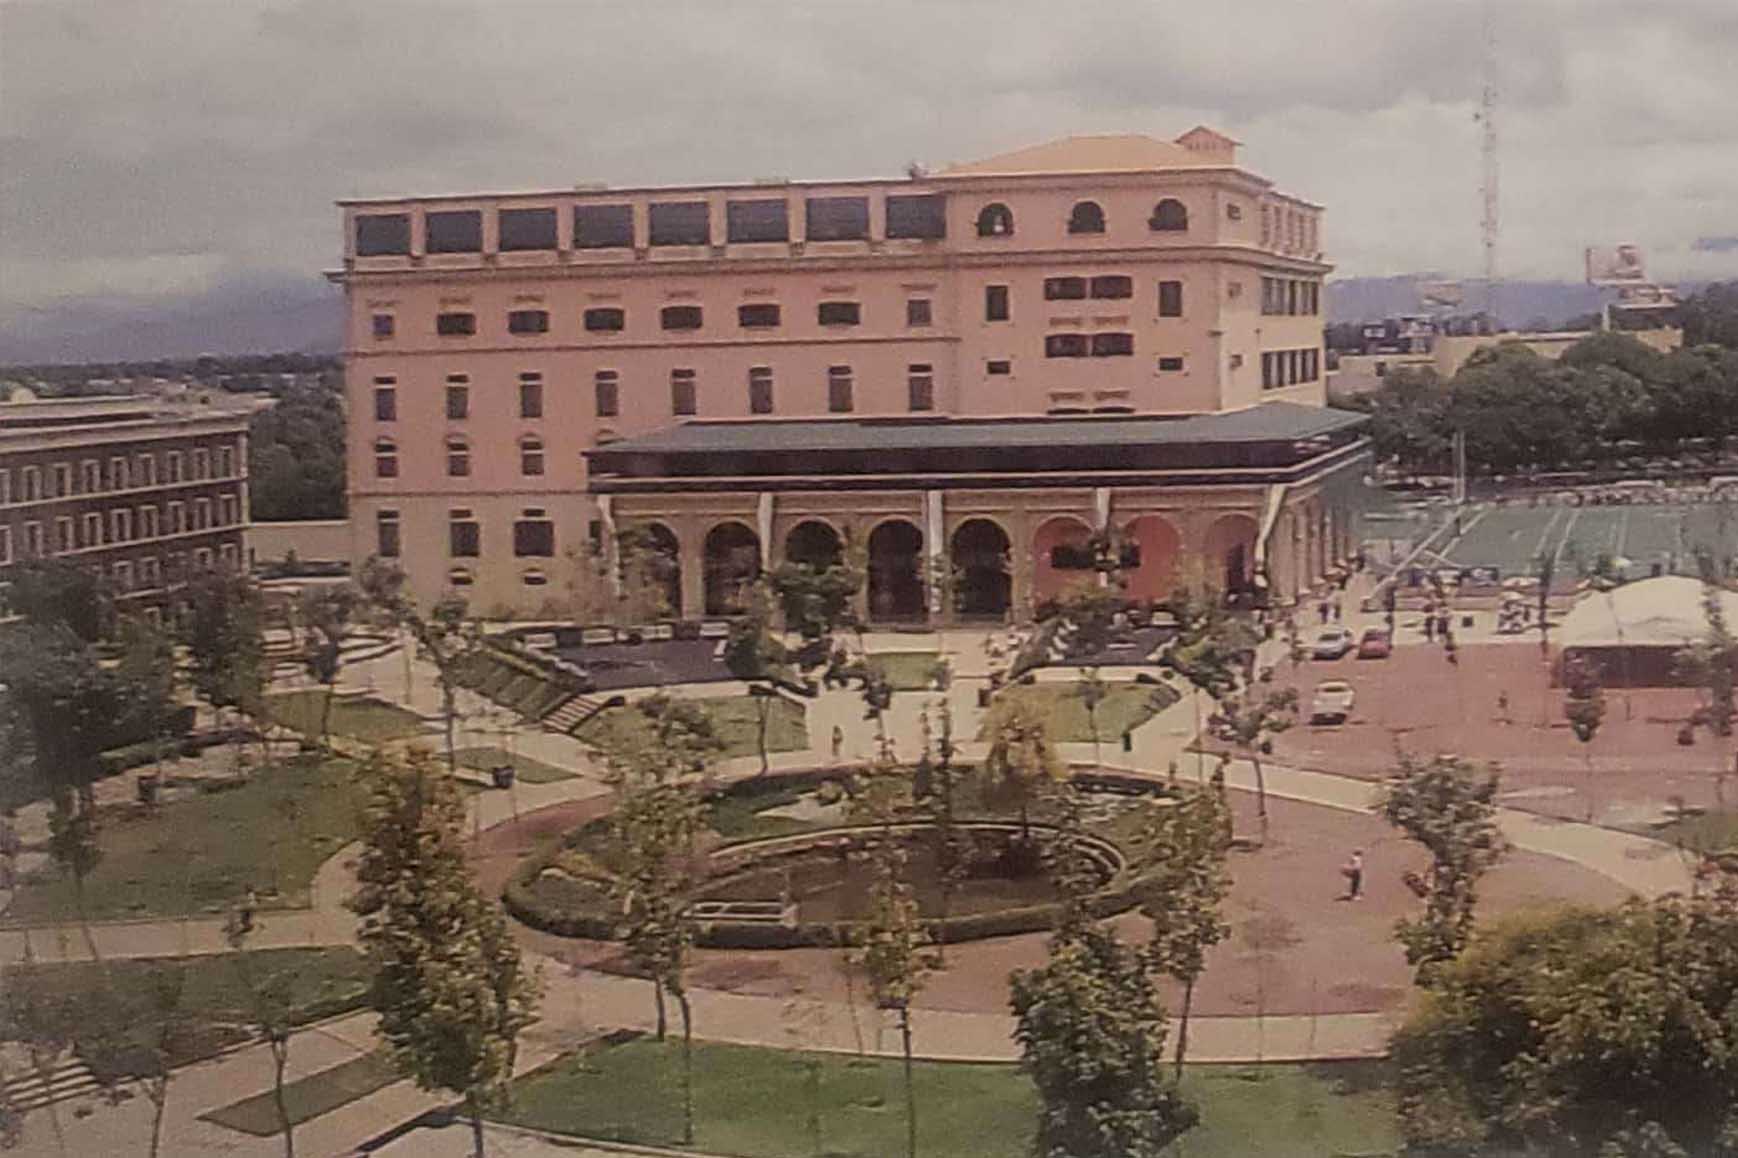 Instalaciones de la universidad Tec de monterrey en Ciudad de Mexico